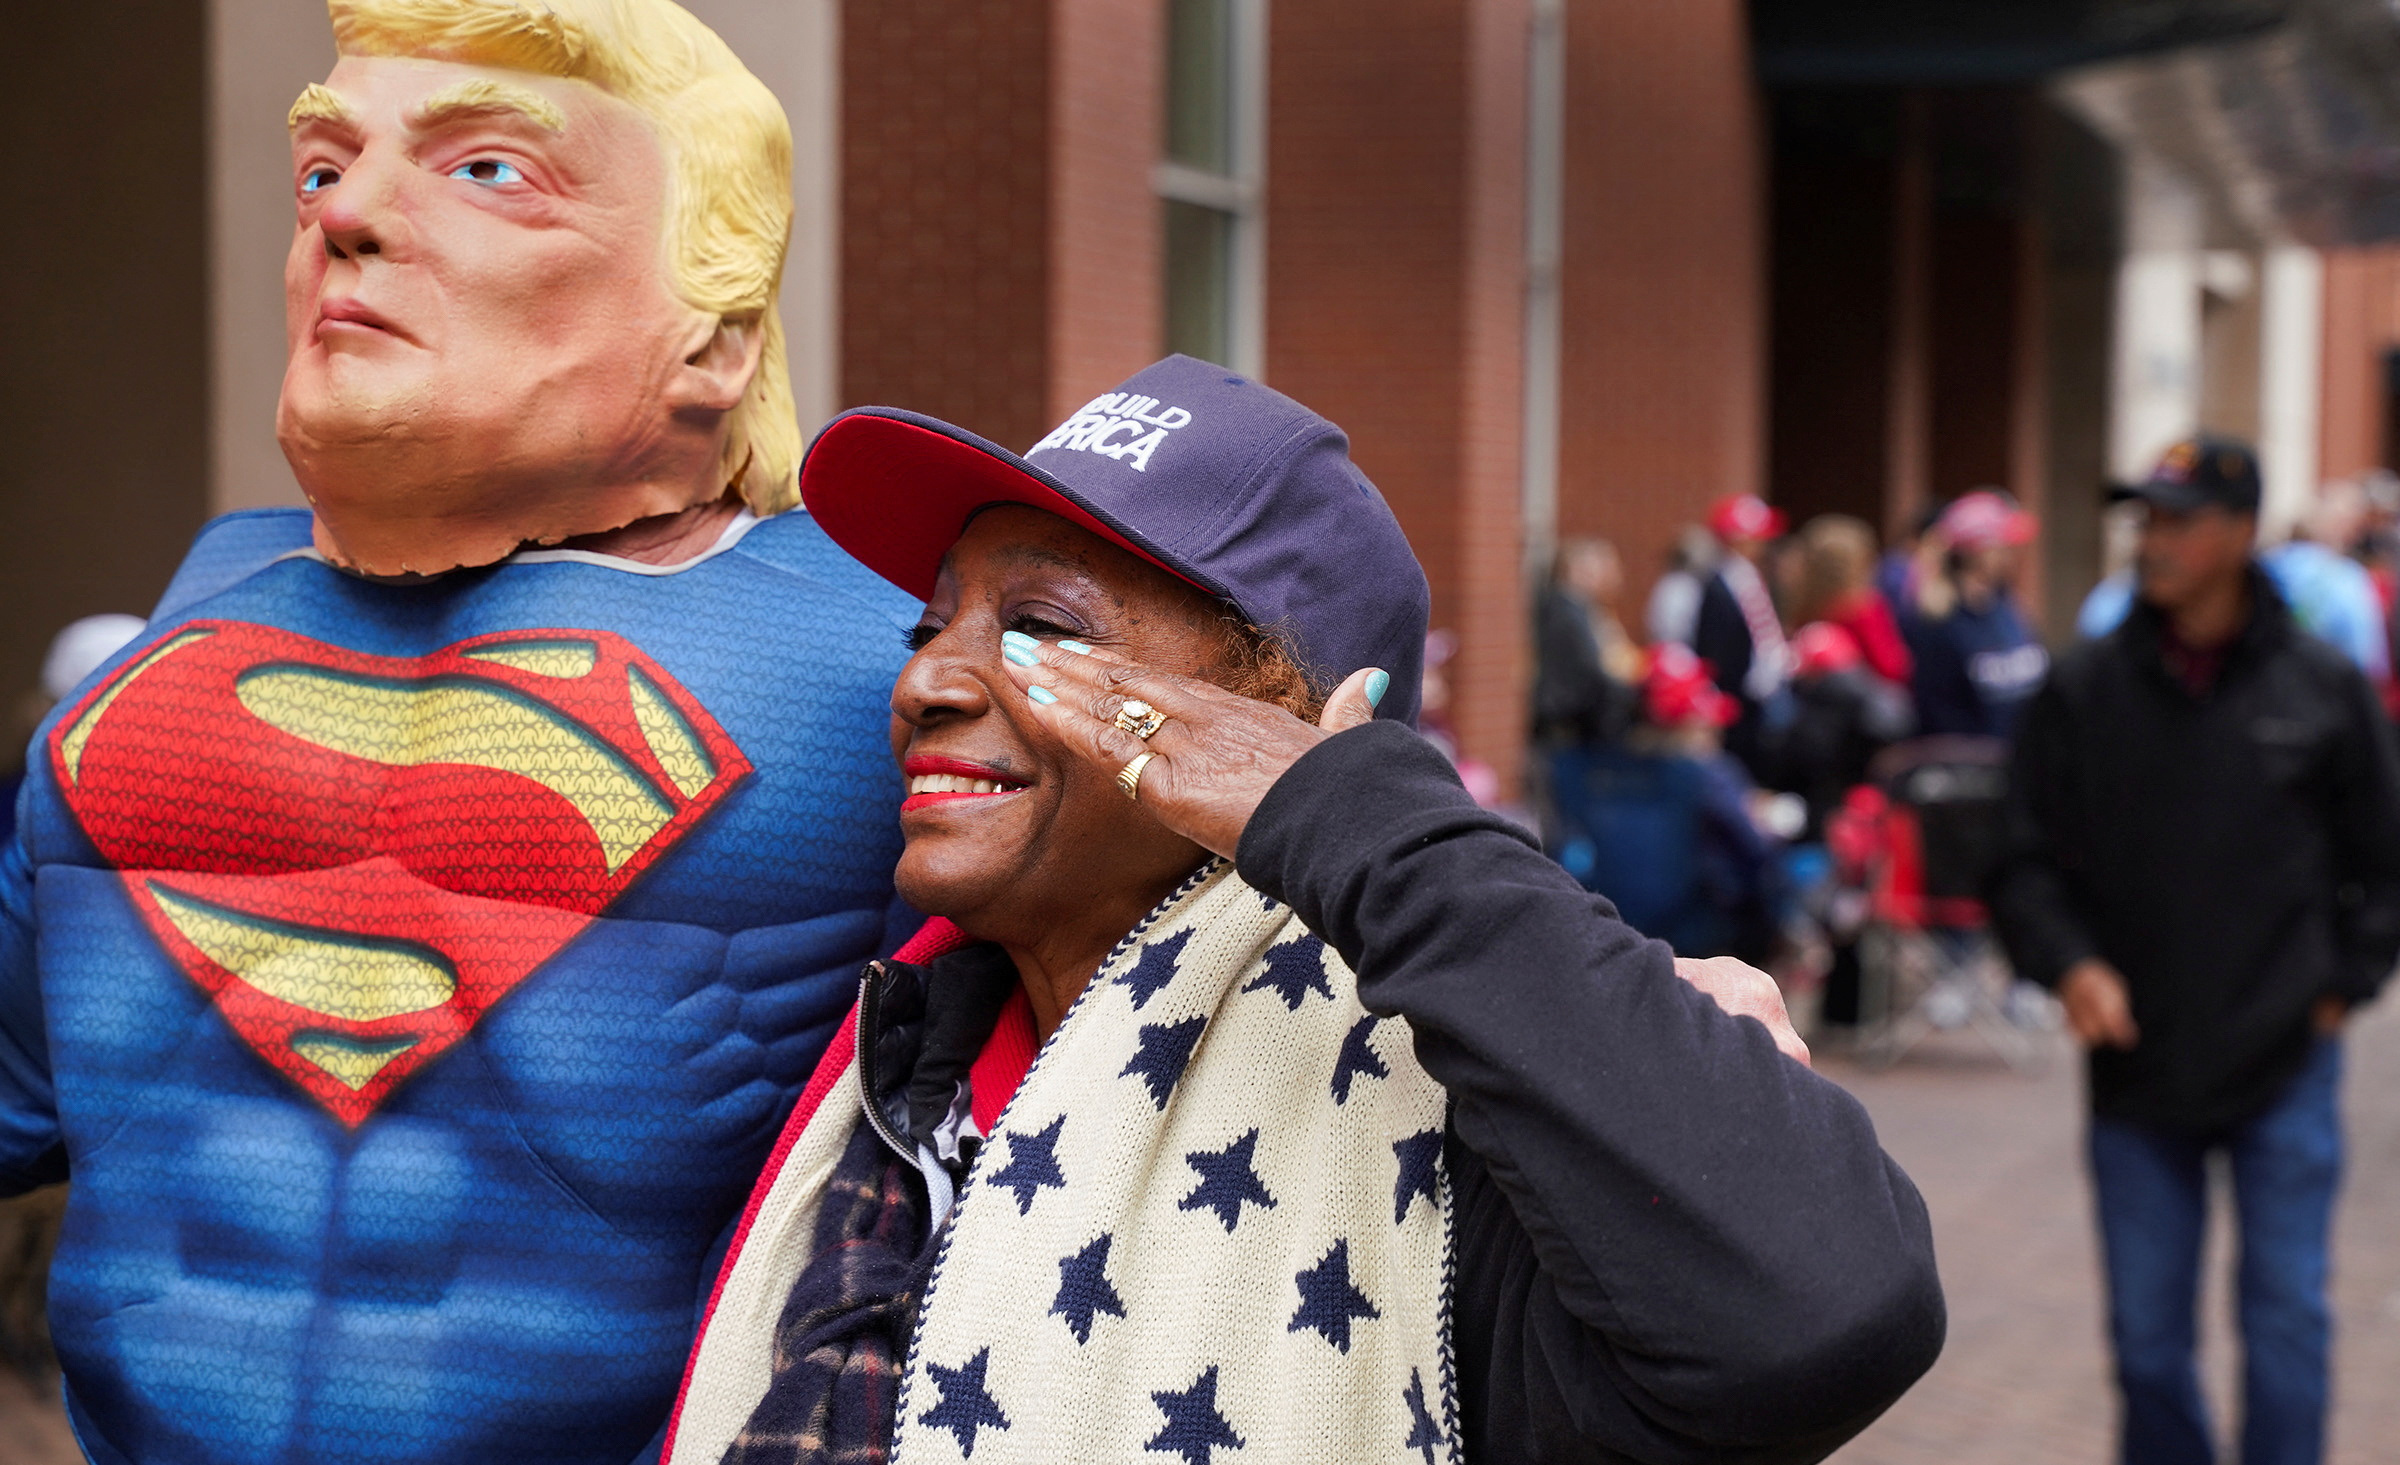 슈퍼맨 복장을 하고 트럼프 마스크를 착용한 사람 옆에서 거수 경례를 하고 있는 미국 시민. /사진=뉴스1/로이터